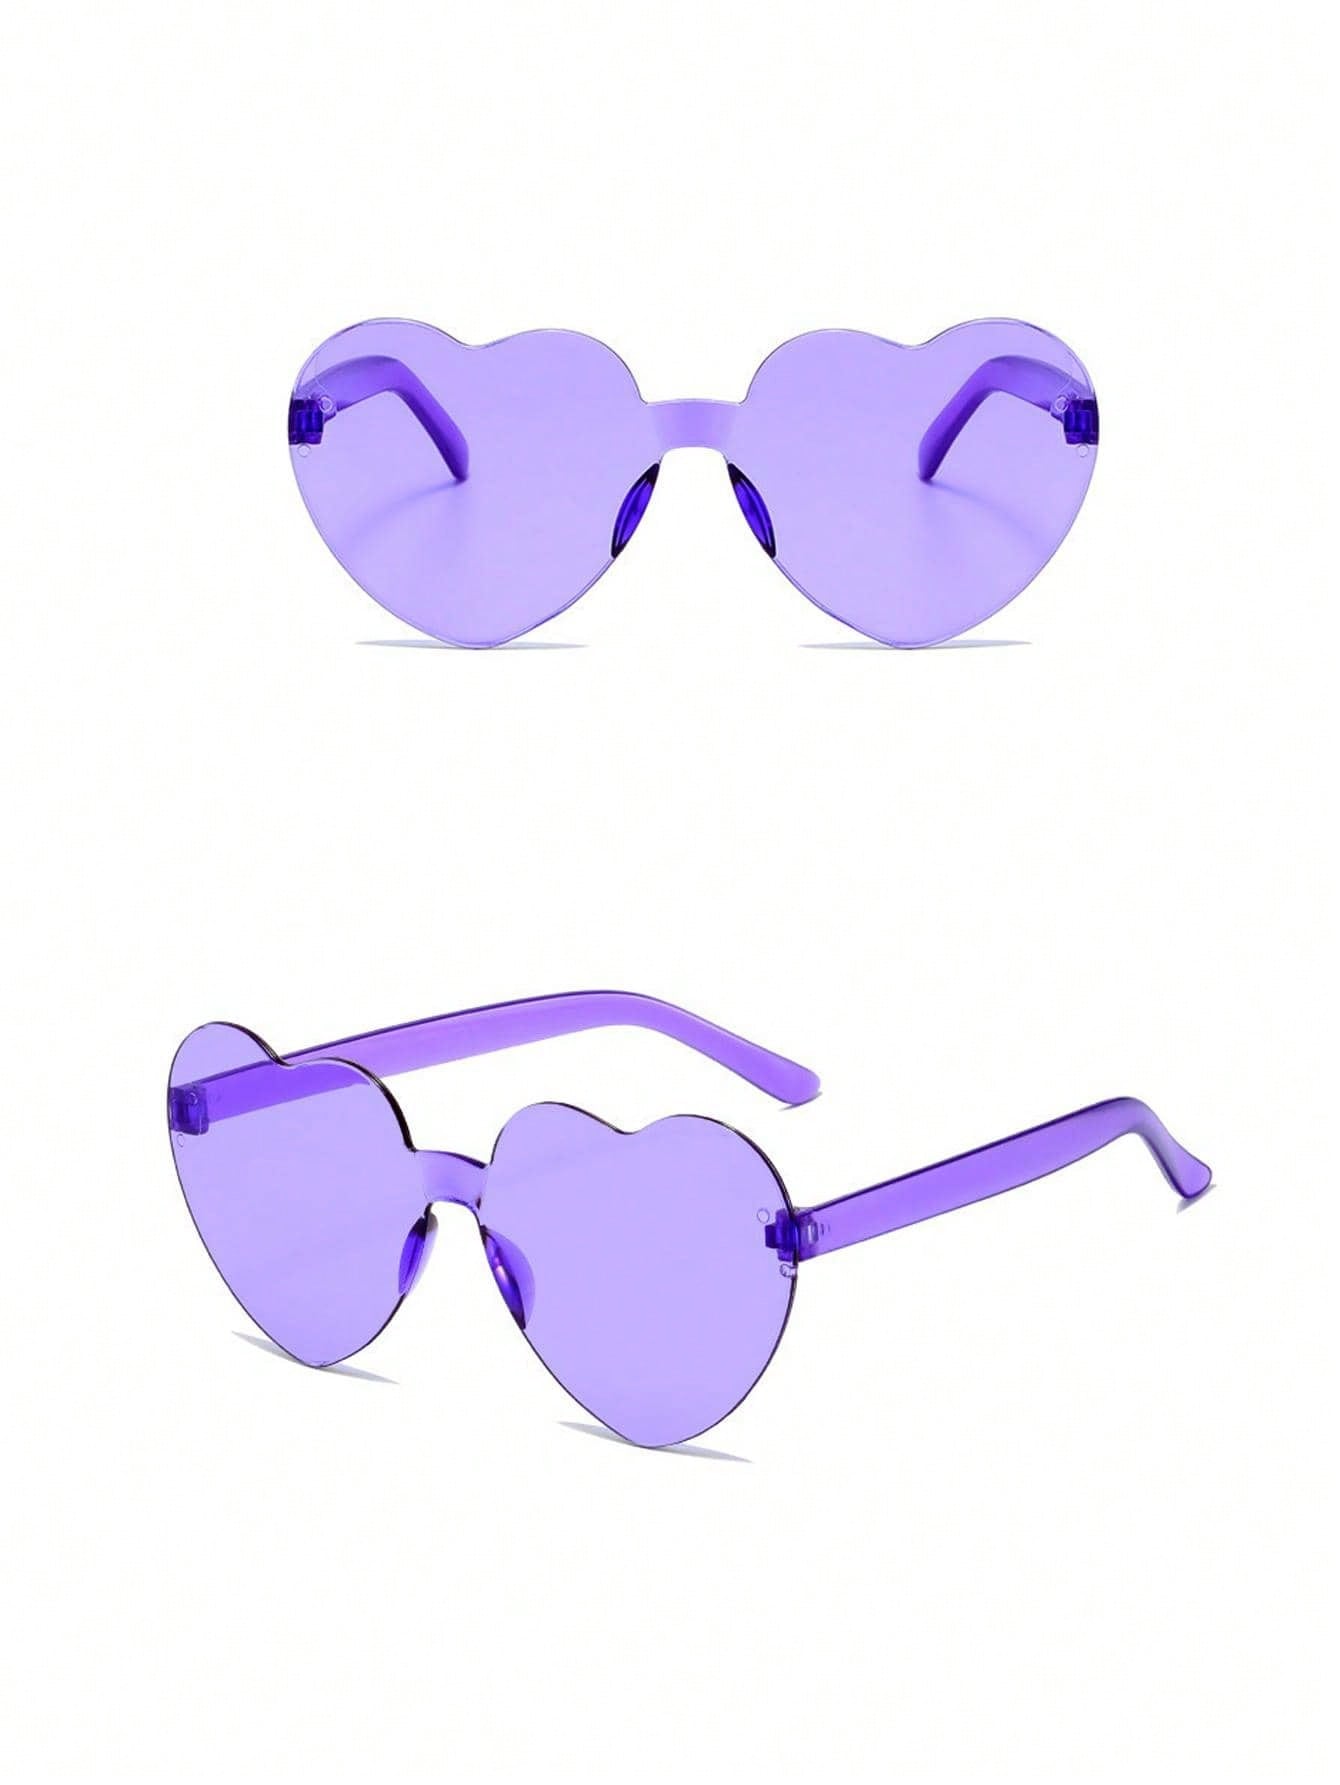 1шт прозрачные фиолетовые цельные очки в форме сердца 1 шт декоративная наклейка в форме сердца